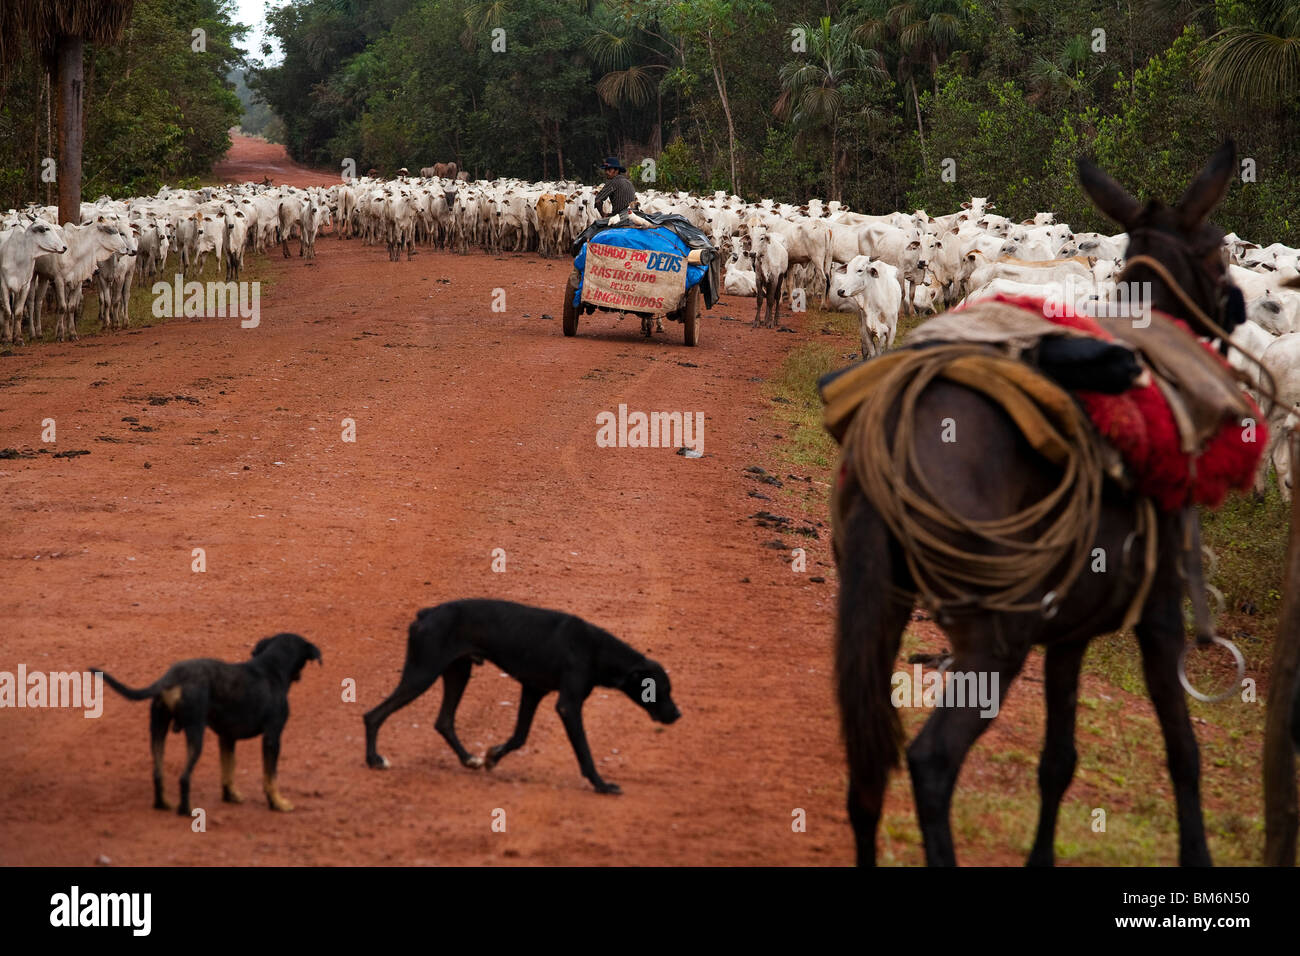 Manada de ganado, la BR-163 (carretera Cuiabá - Santarém road ) en el sur del estado de Pará, Amazonas, Brasil. Foto de stock